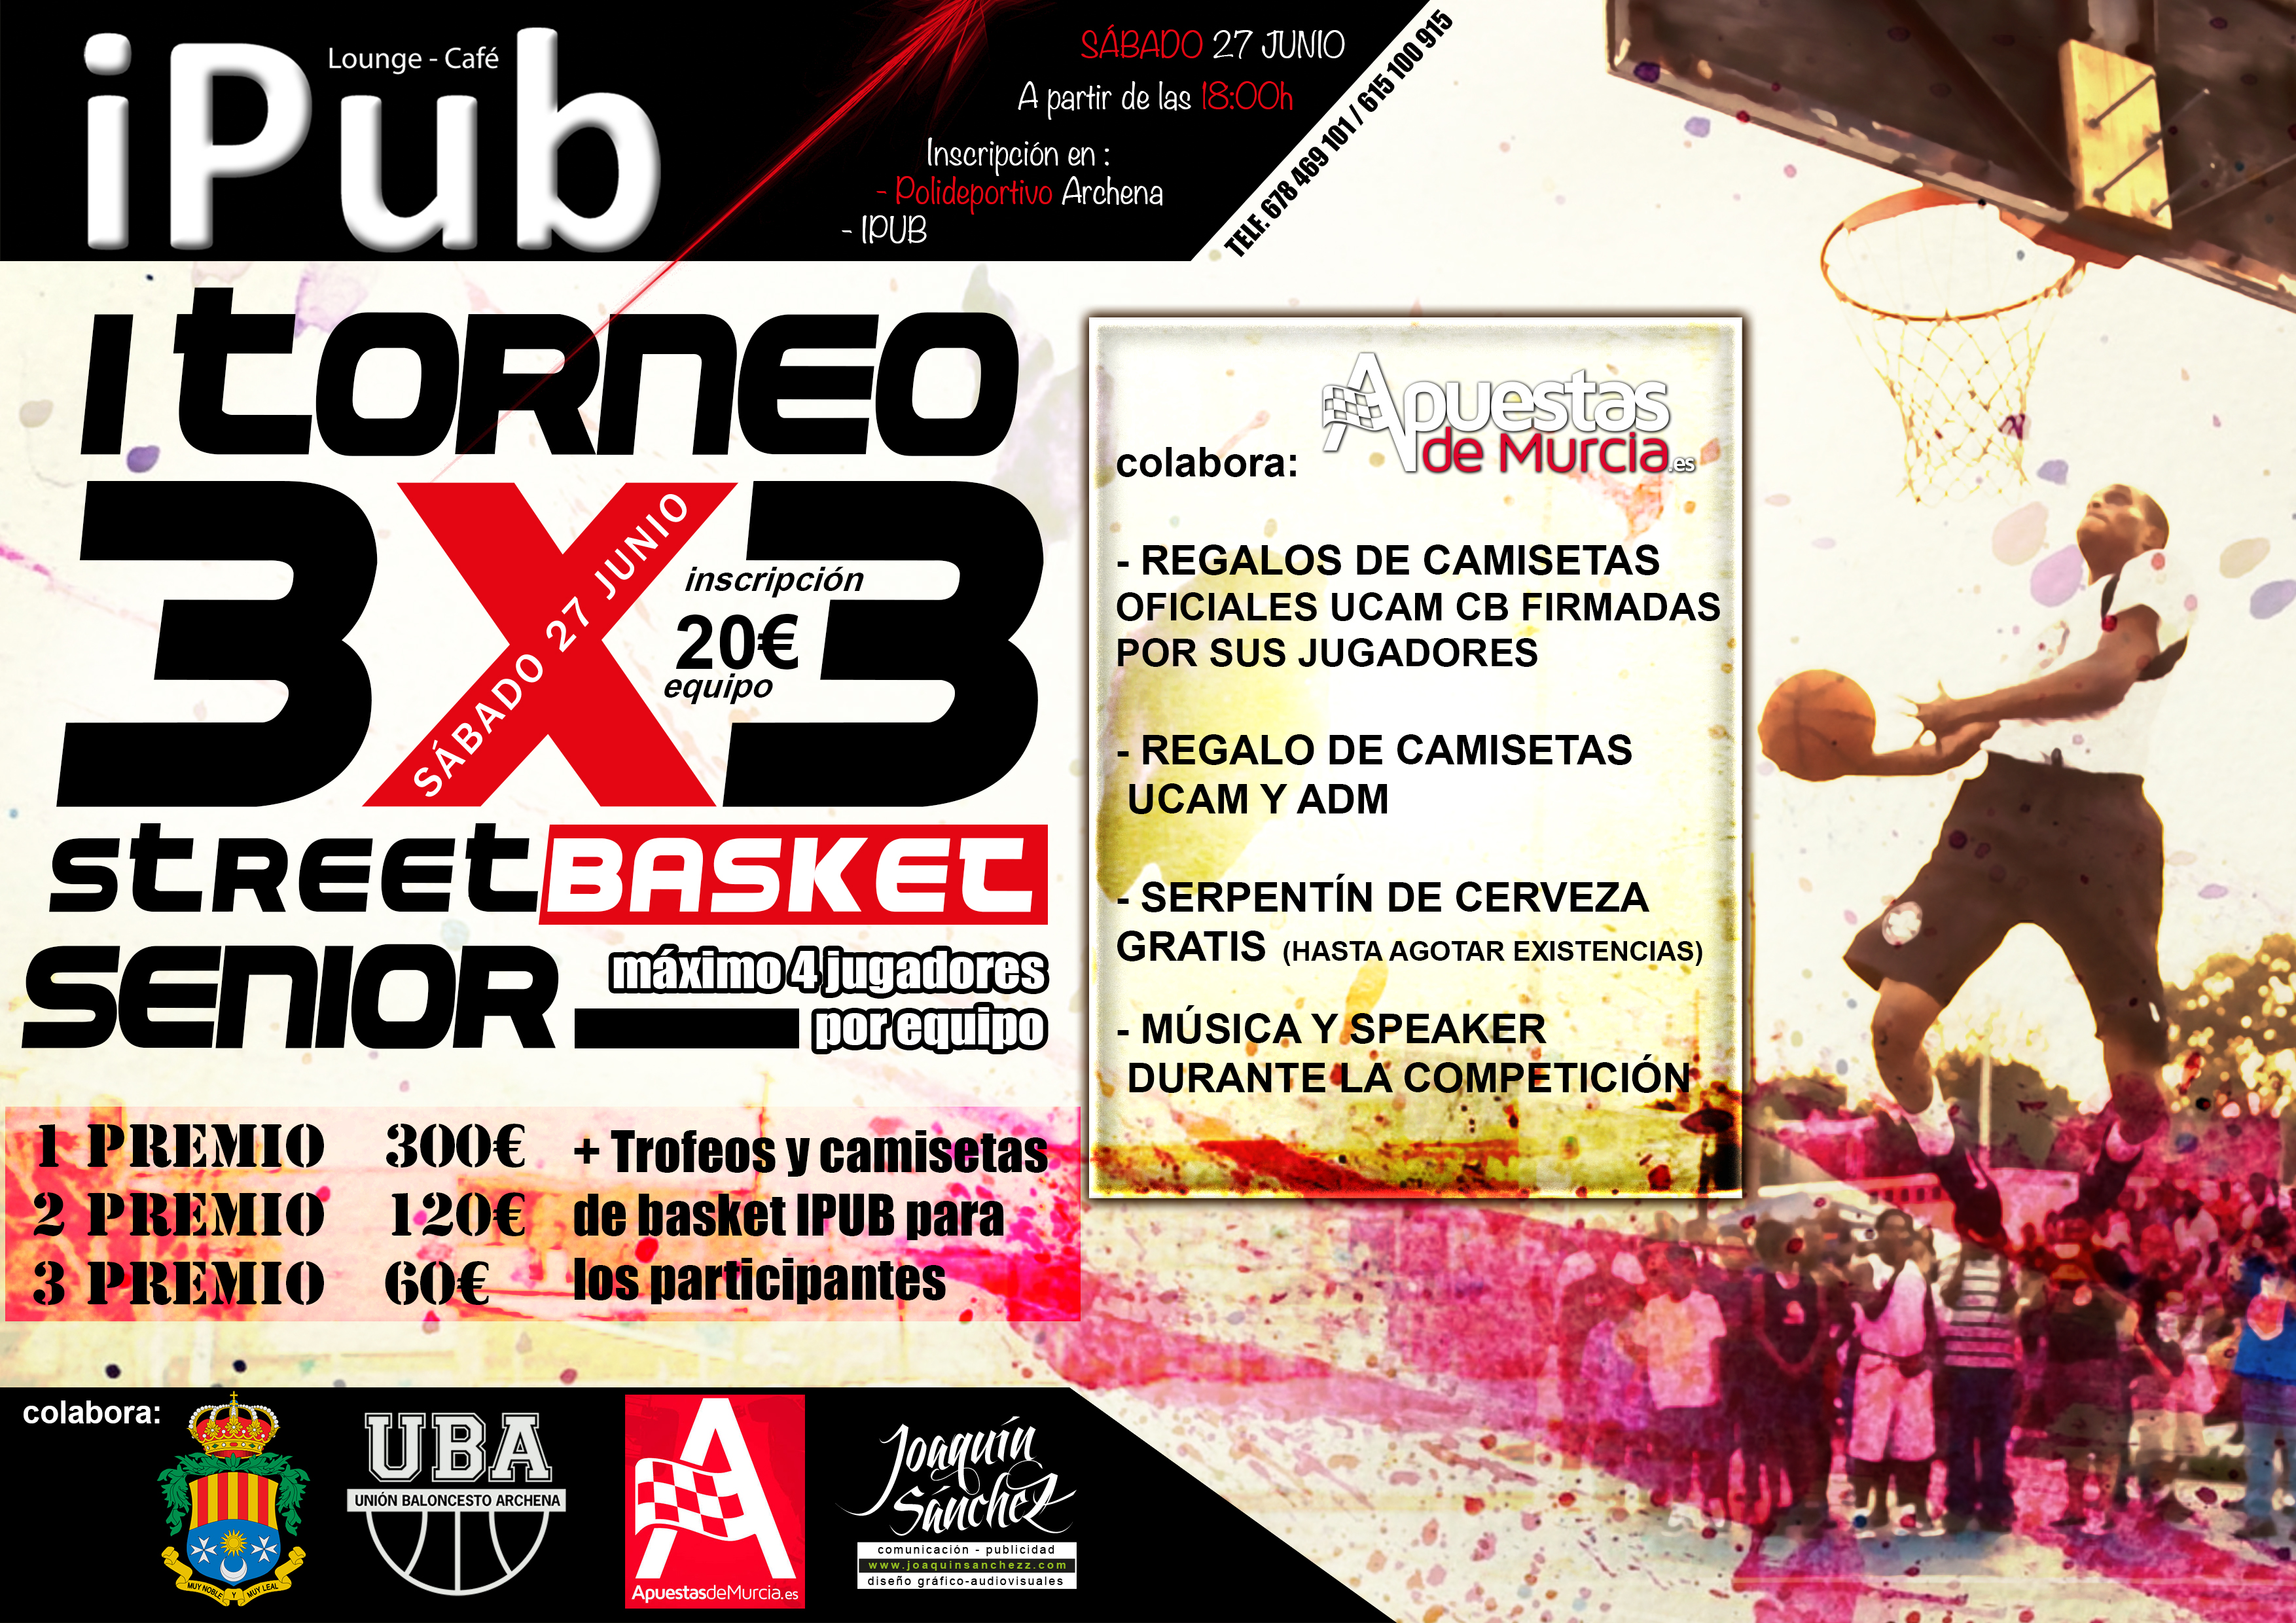 Apuestas de Murcia 3x3 basket